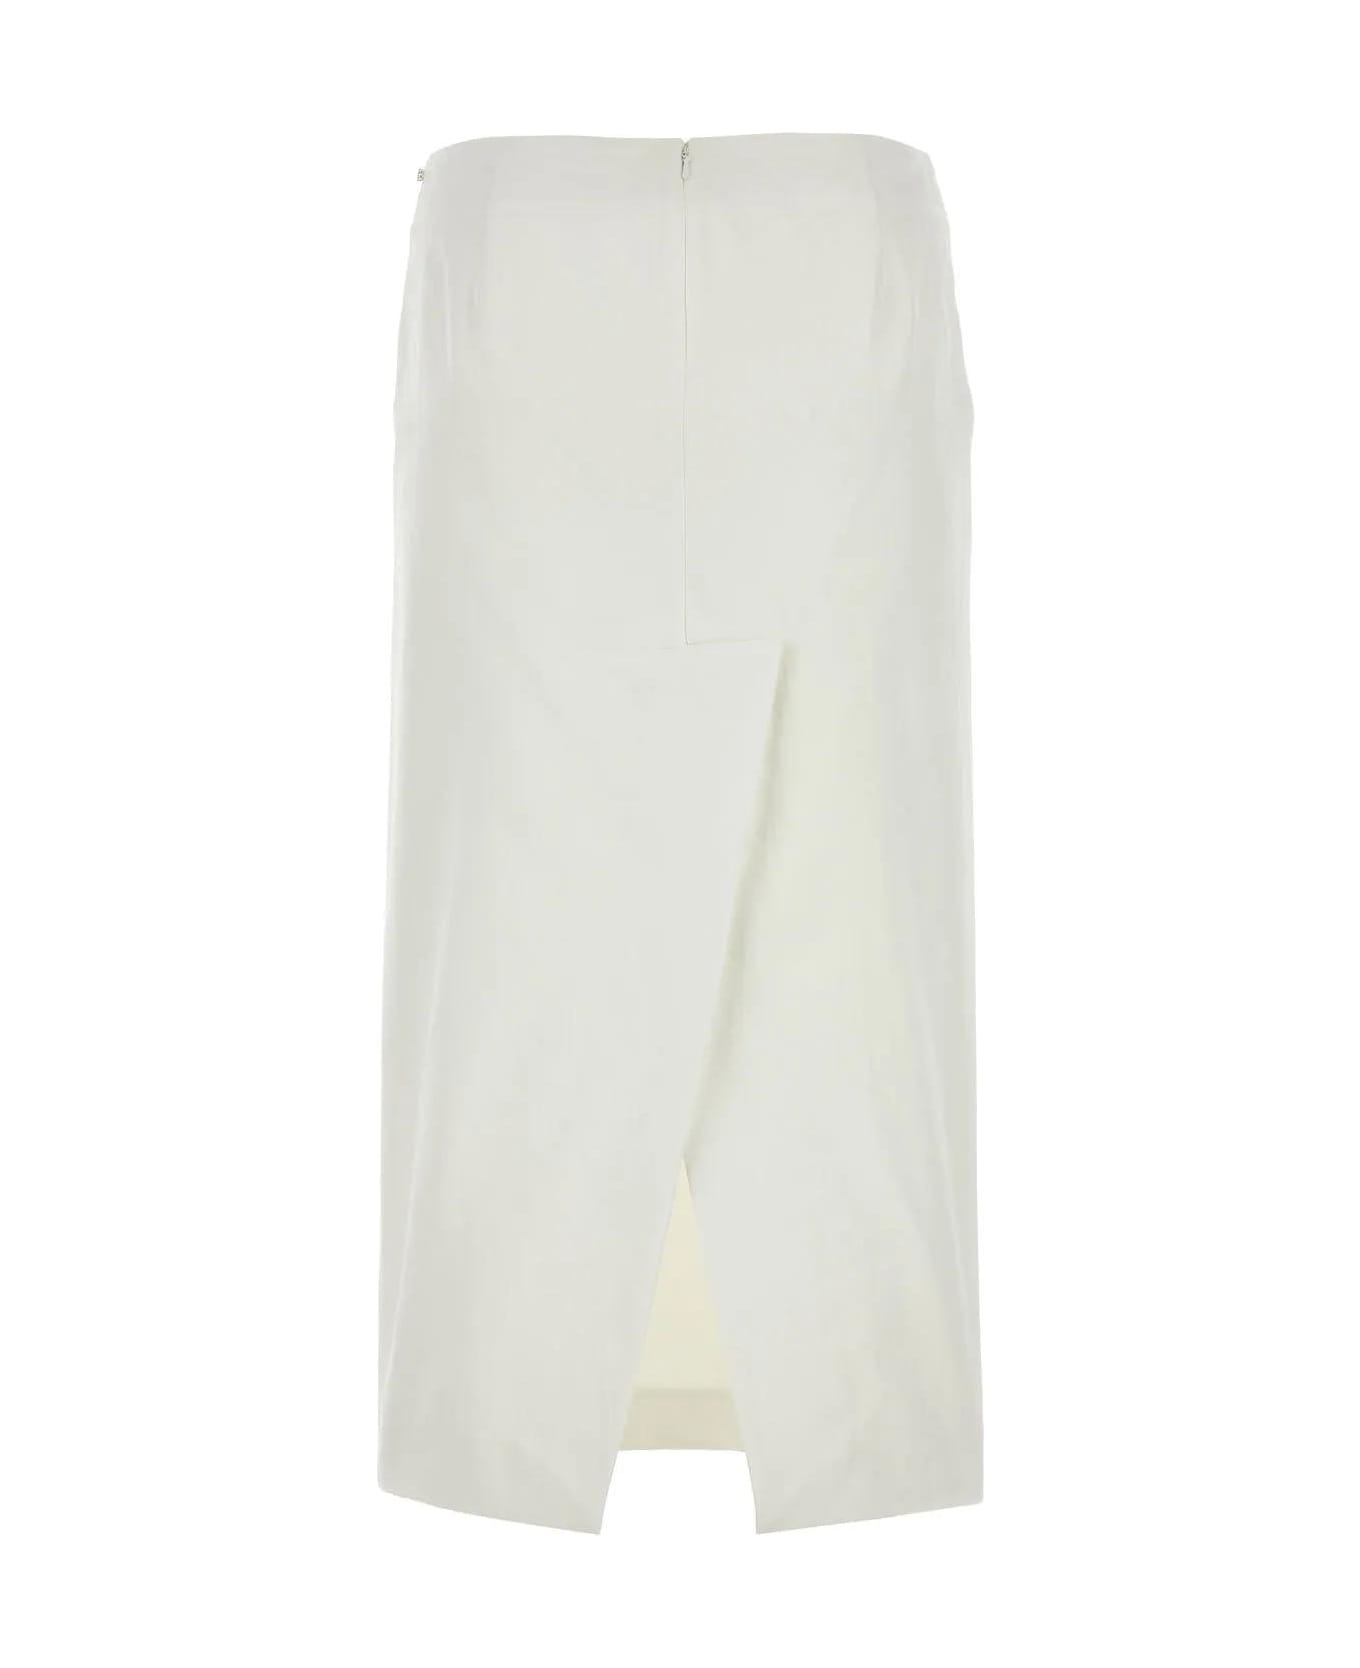 SportMax White Satin Cellula Skirt - White